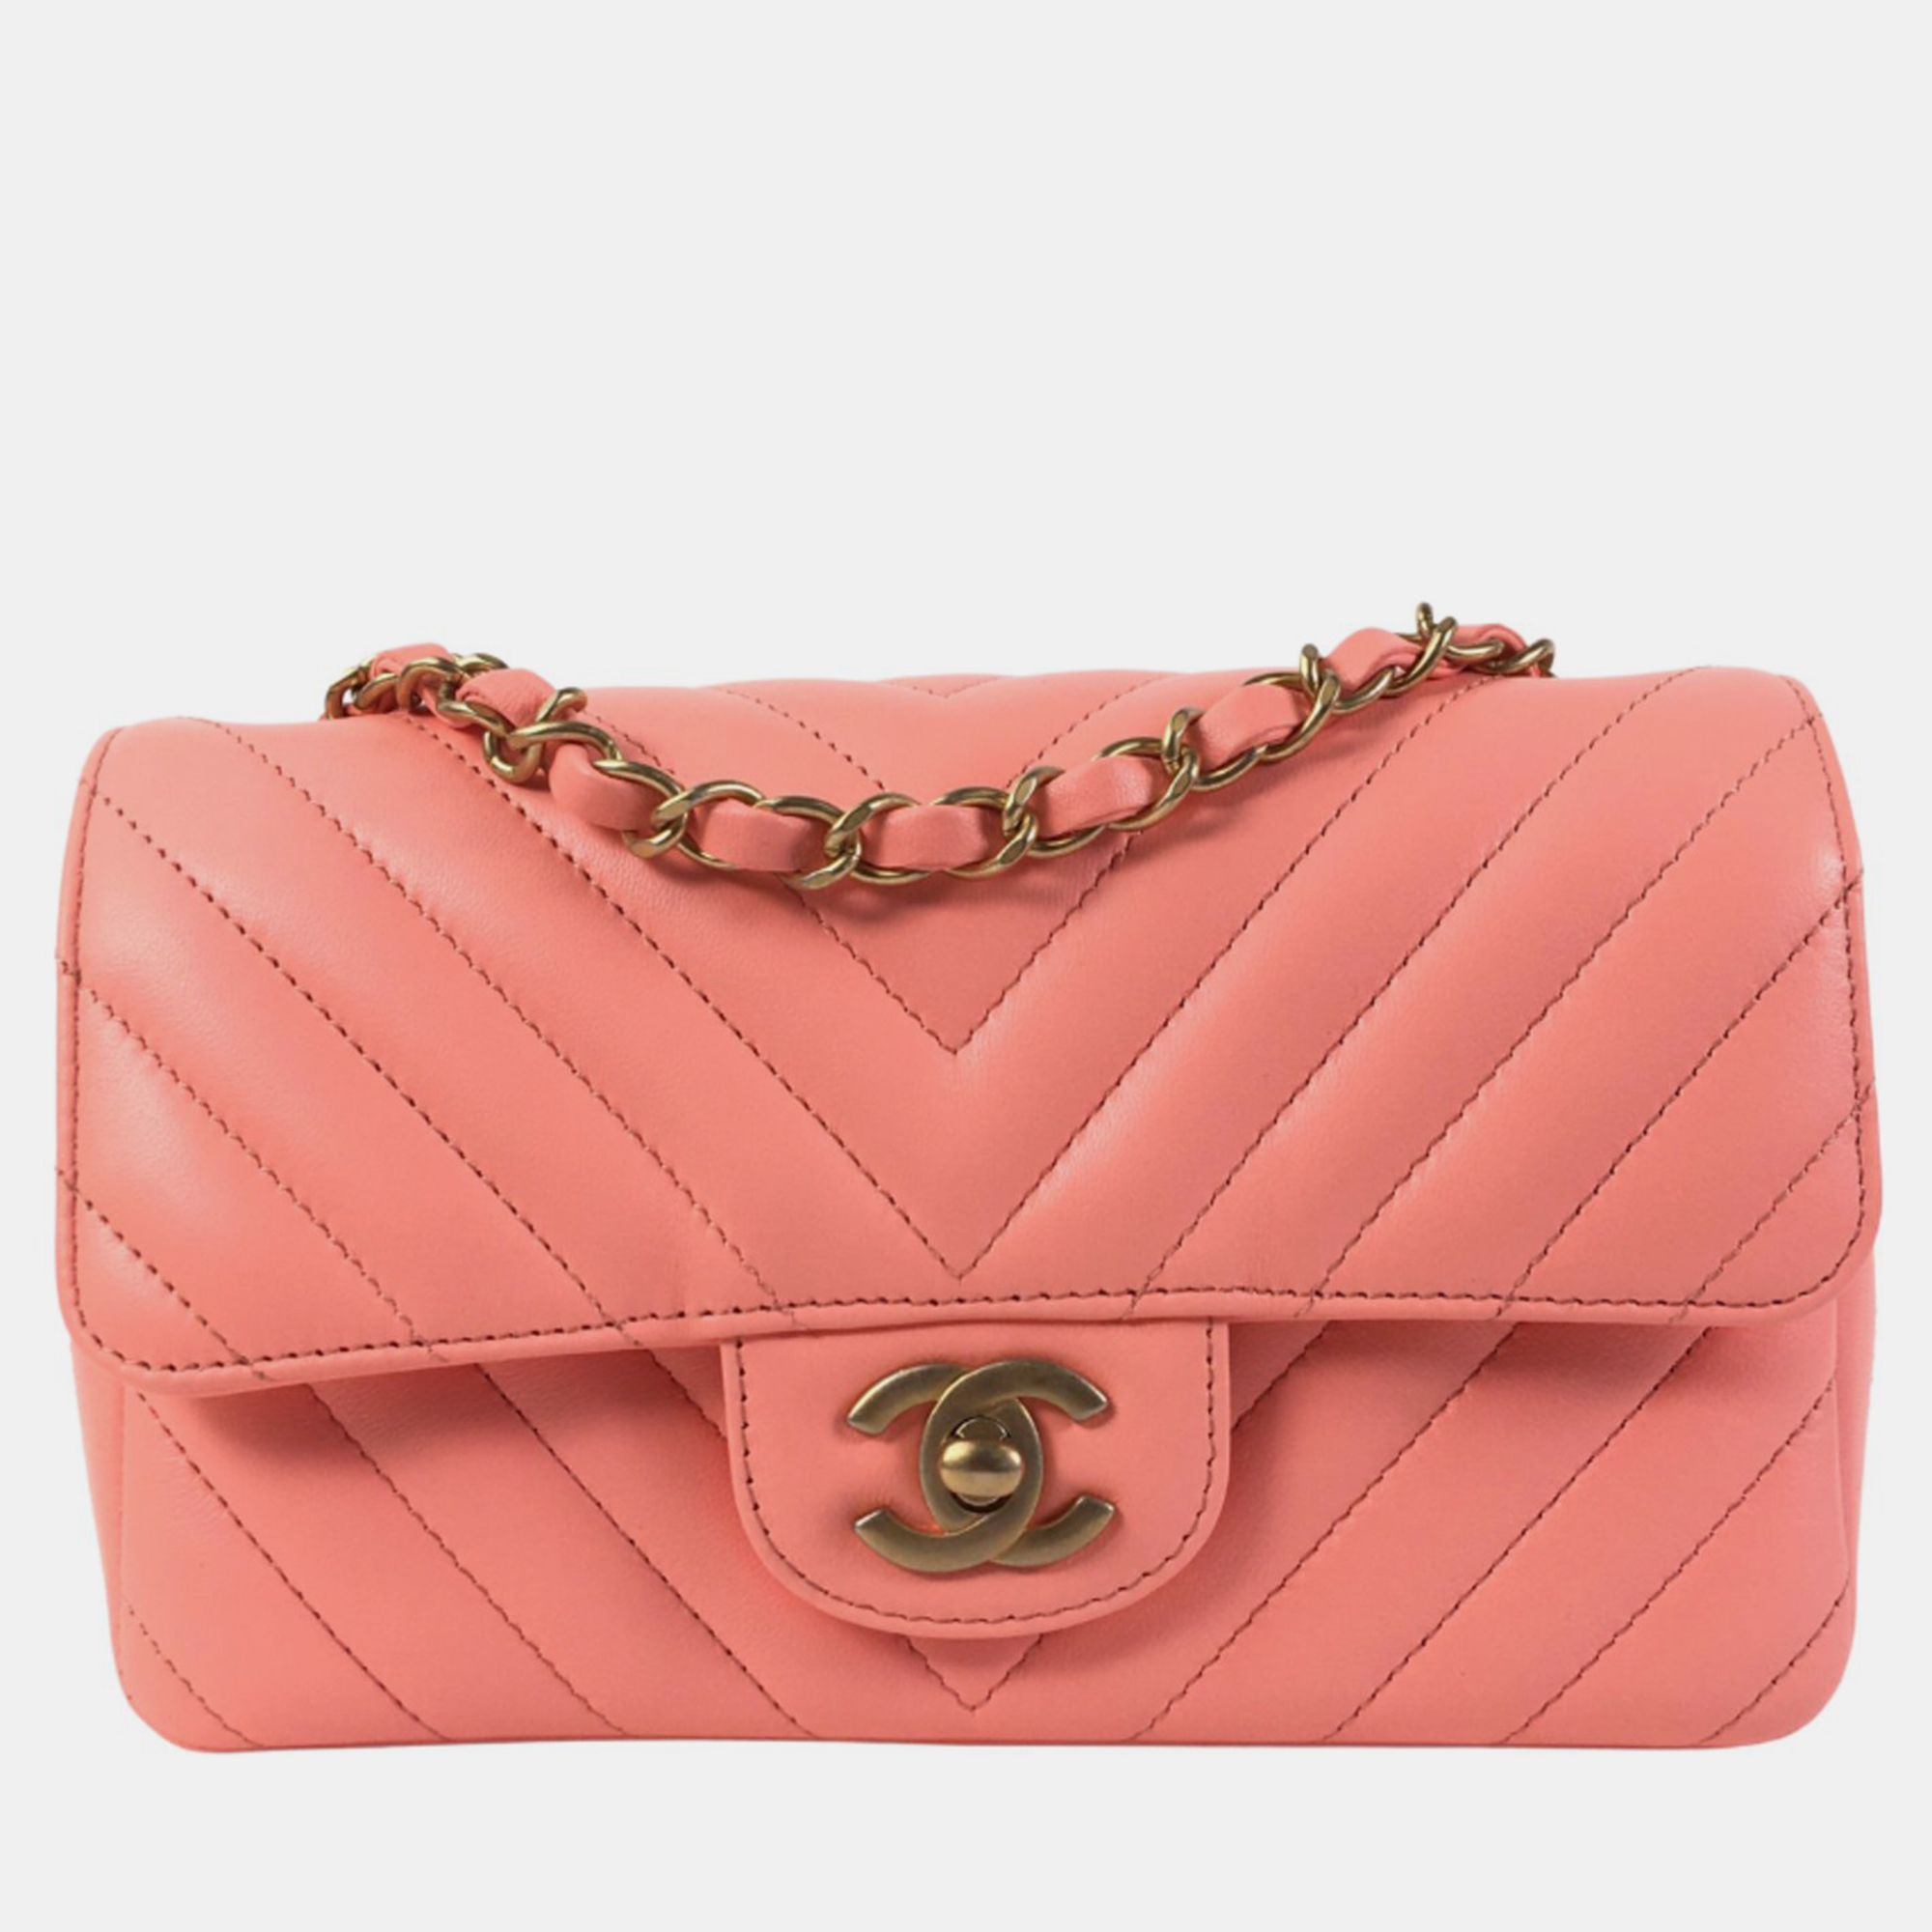 Chanel peach chevron mini rectangular classic flap bag